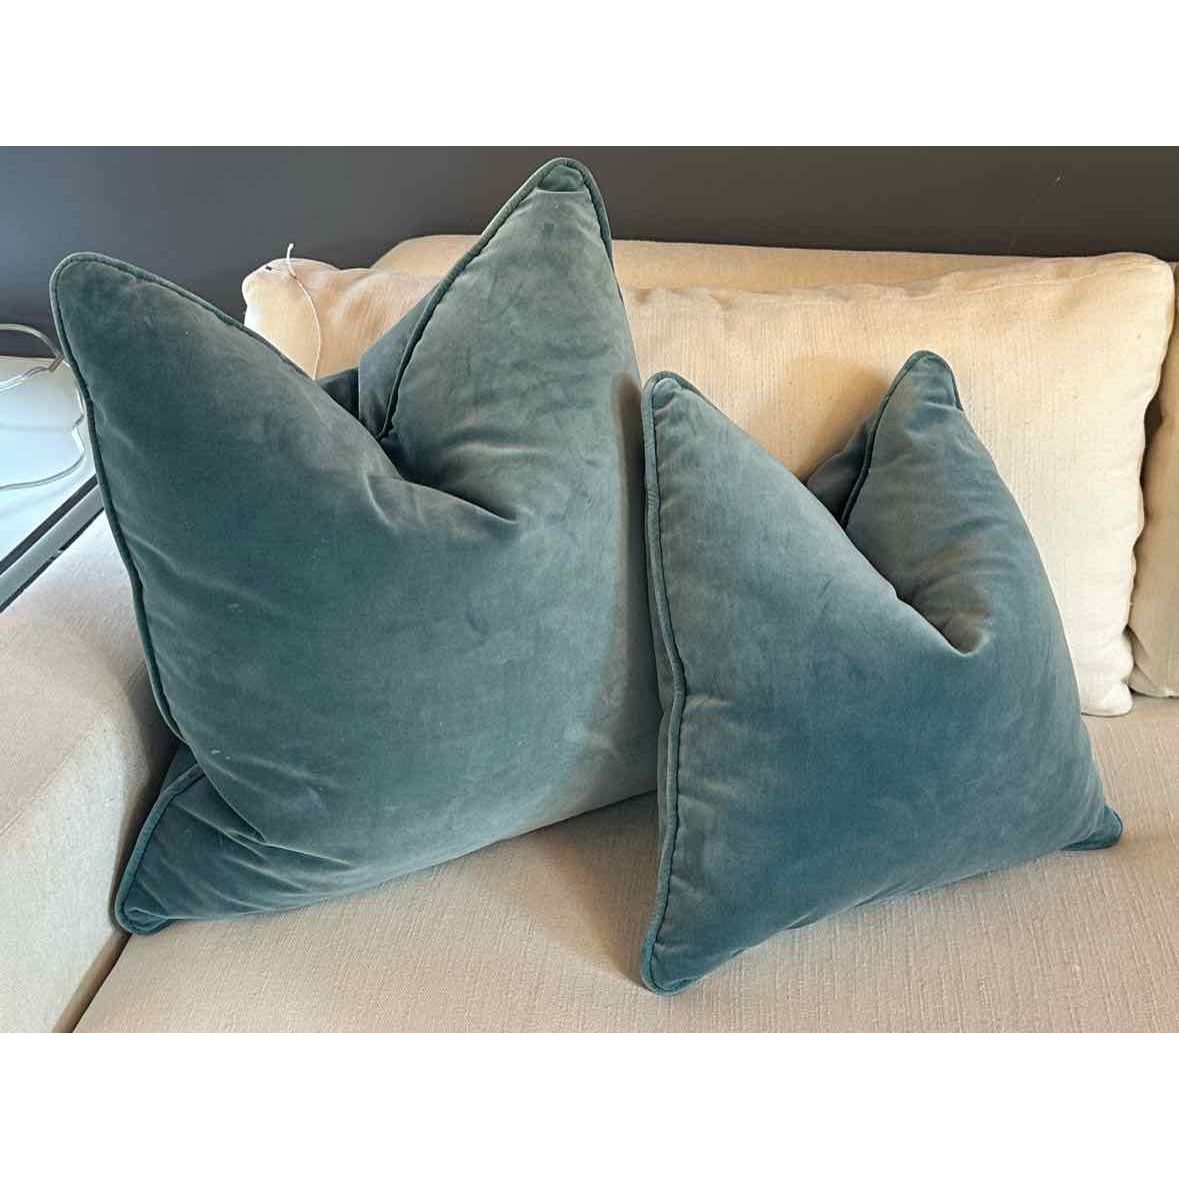 Pair of Teal Velvet Pillows